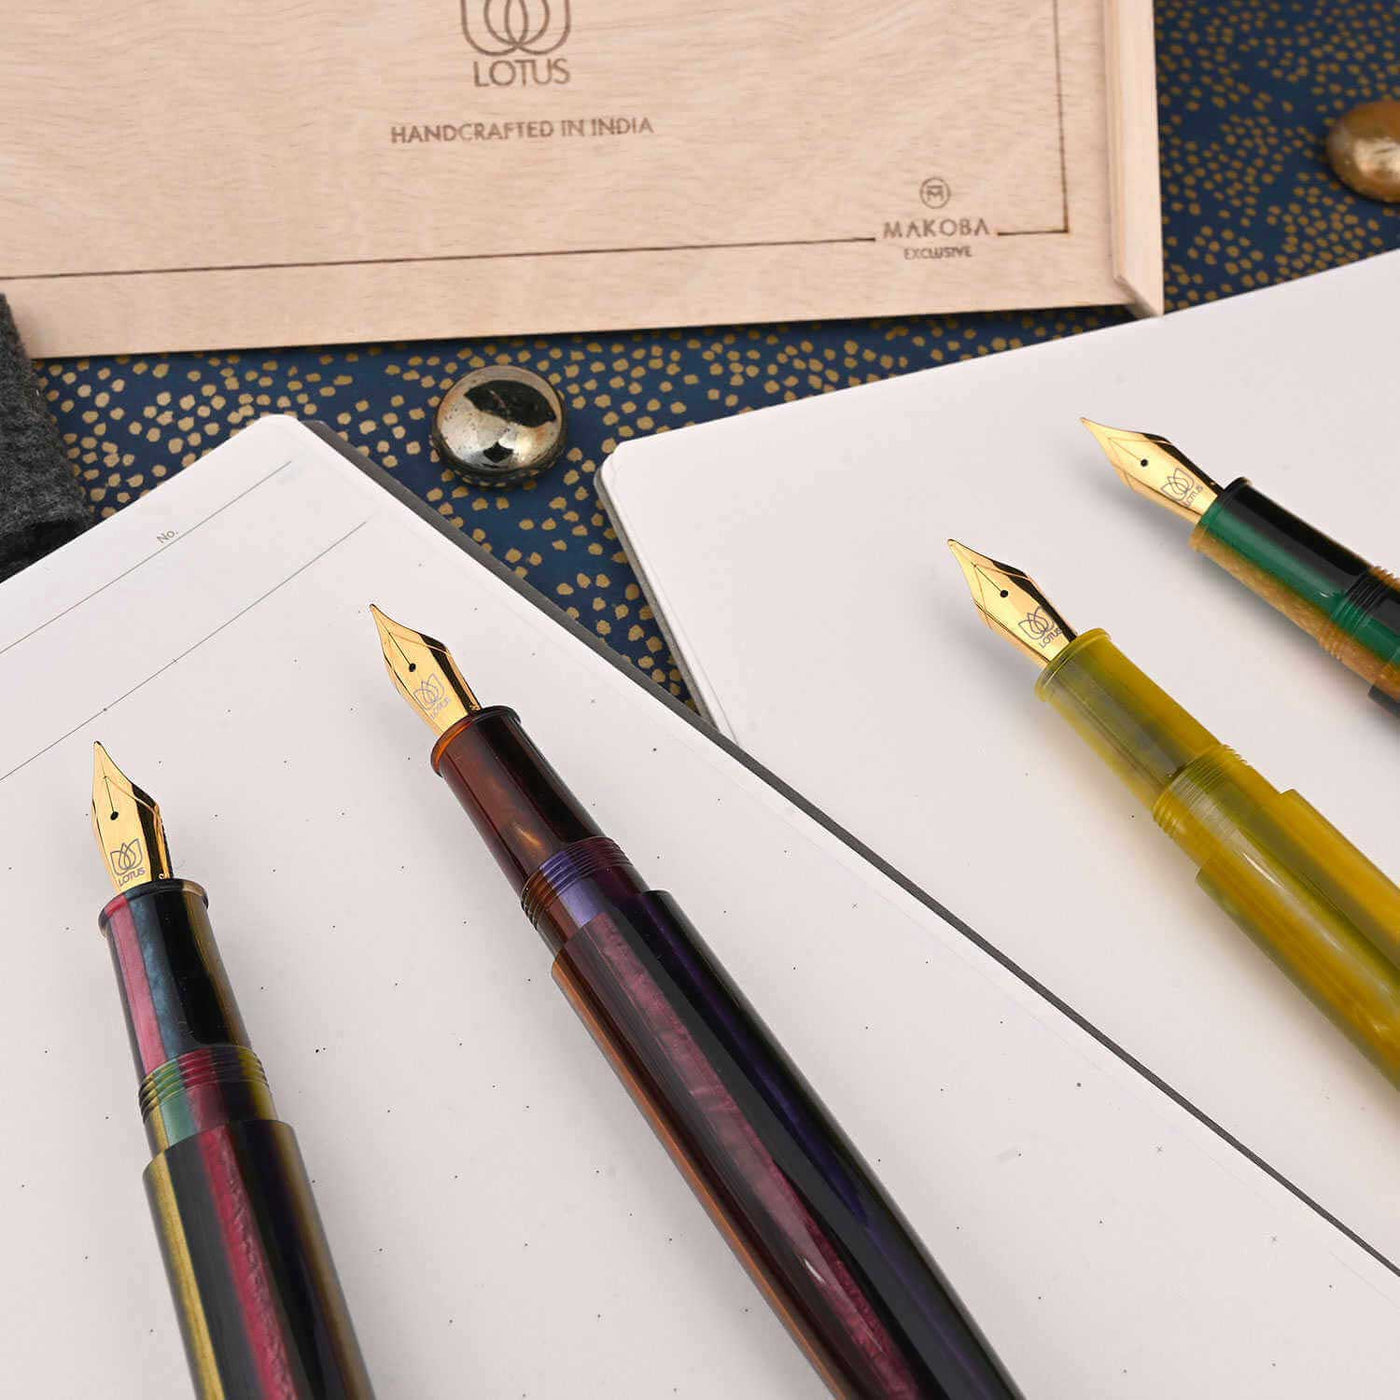 Lotus Saral Halos Special Edition Fountain Pen Chartreuse Steel Nib 8